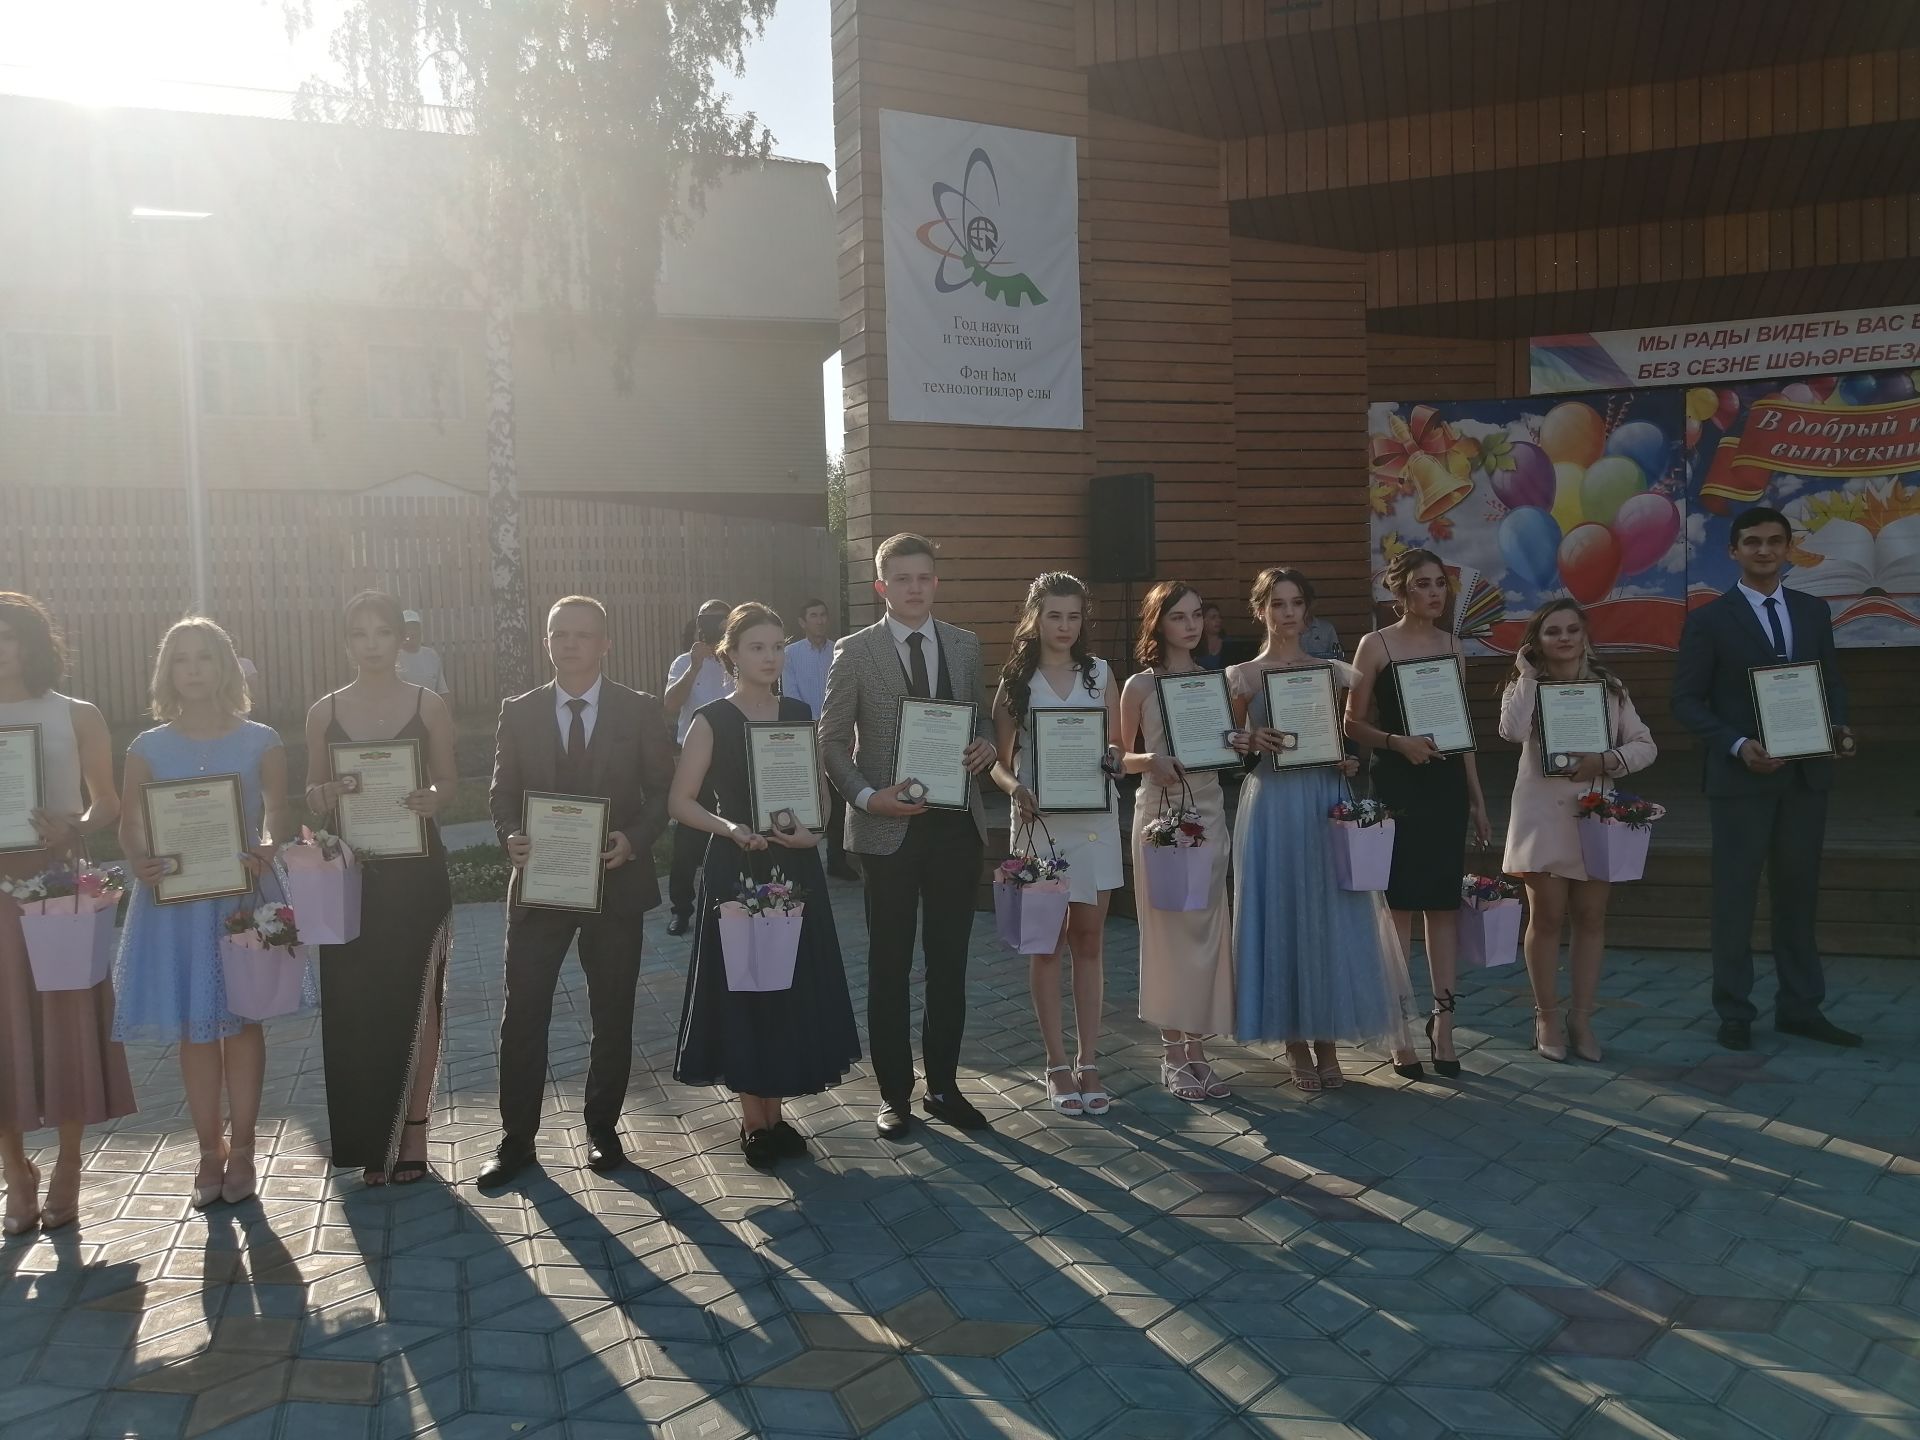 Сегодня в Буинске состоялось вручение медалей выпускникам (+фото)